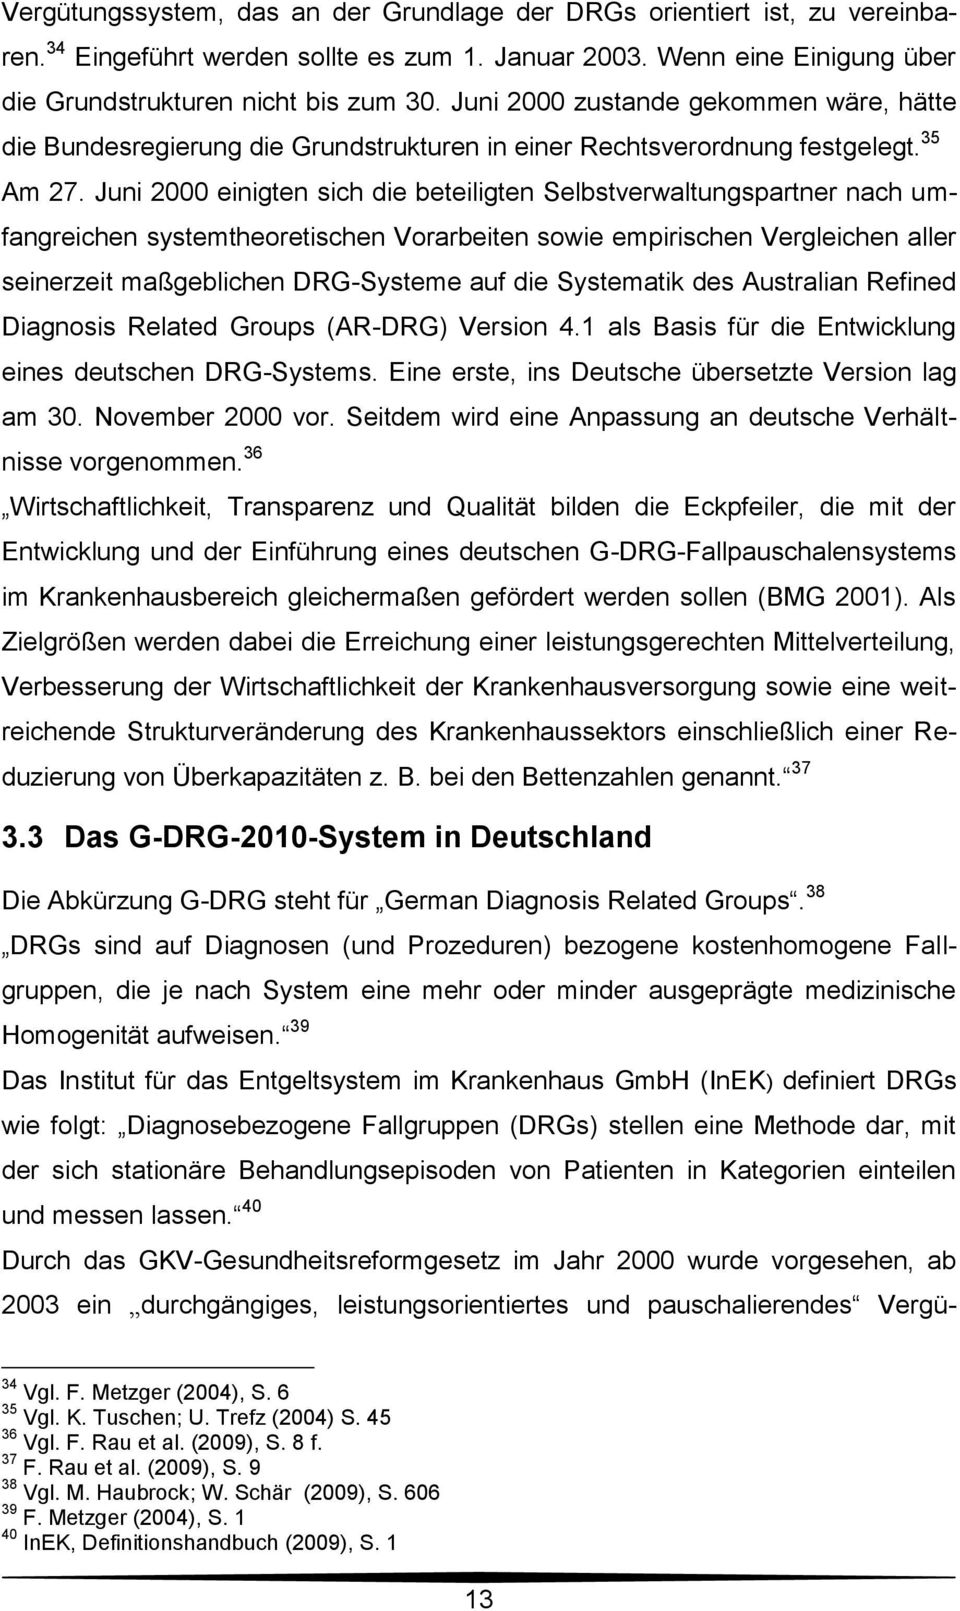 Juni 2000 einigten sich die beteiligten Selbstverwaltungspartner nach umfangreichen systemtheoretischen Vorarbeiten sowie empirischen Vergleichen aller seinerzeit maßgeblichen DRG-Systeme auf die